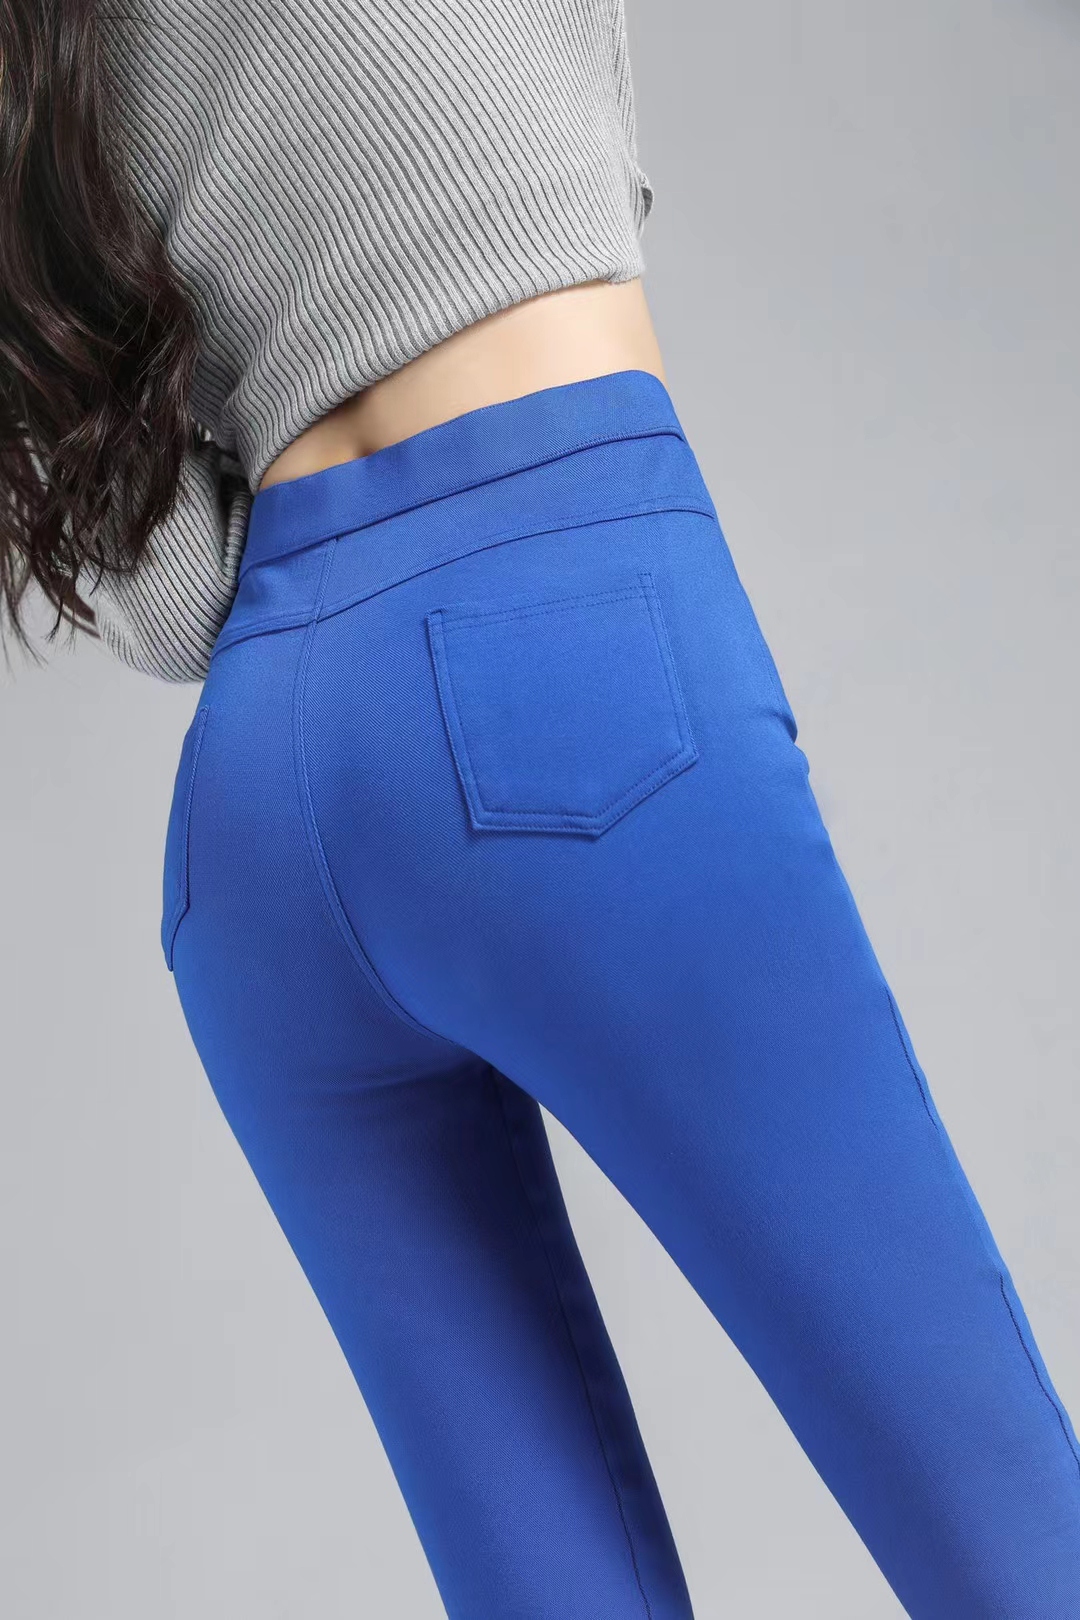 Ladies pants leggings blue trousers woman clothes jeans